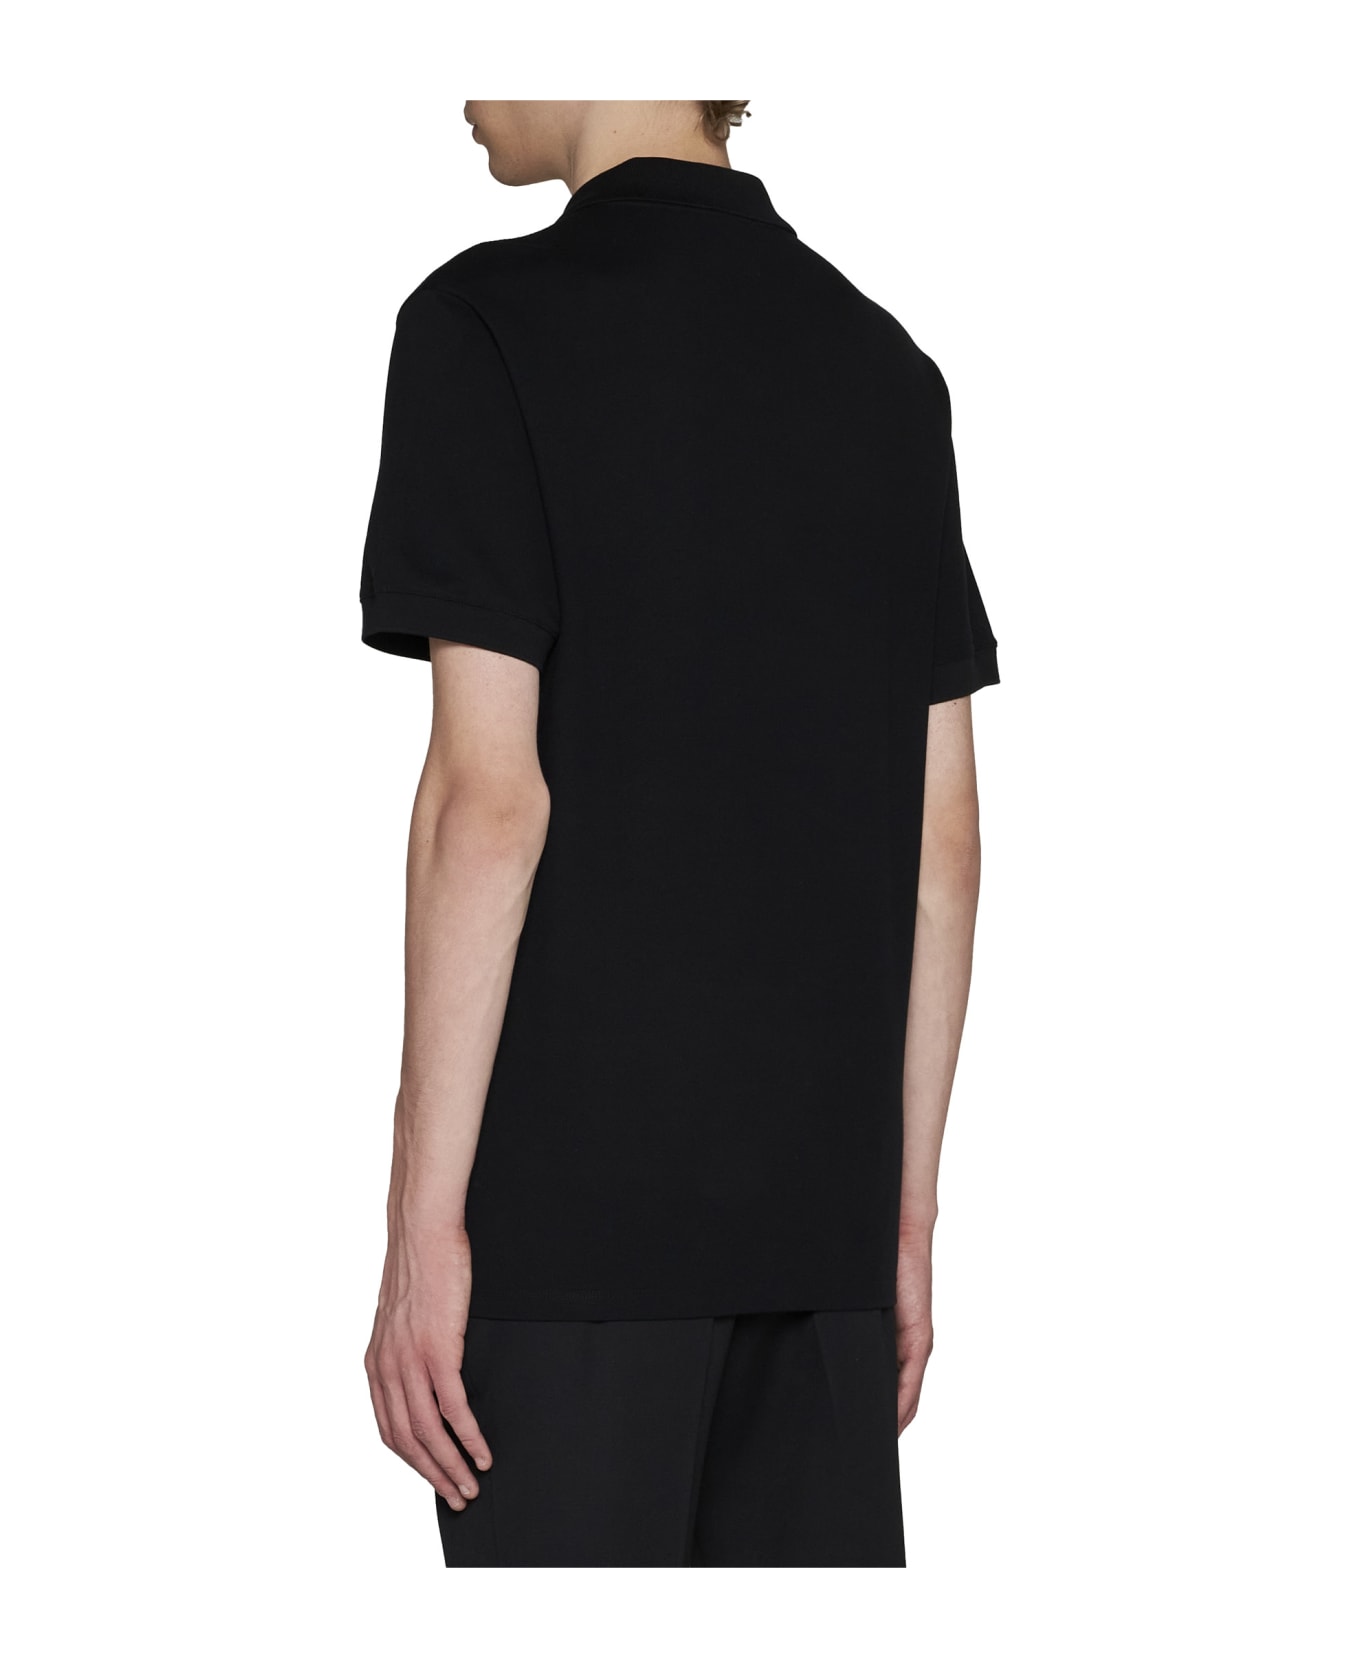 Alexander McQueen Cotton Polo Shirt - Black ポロシャツ